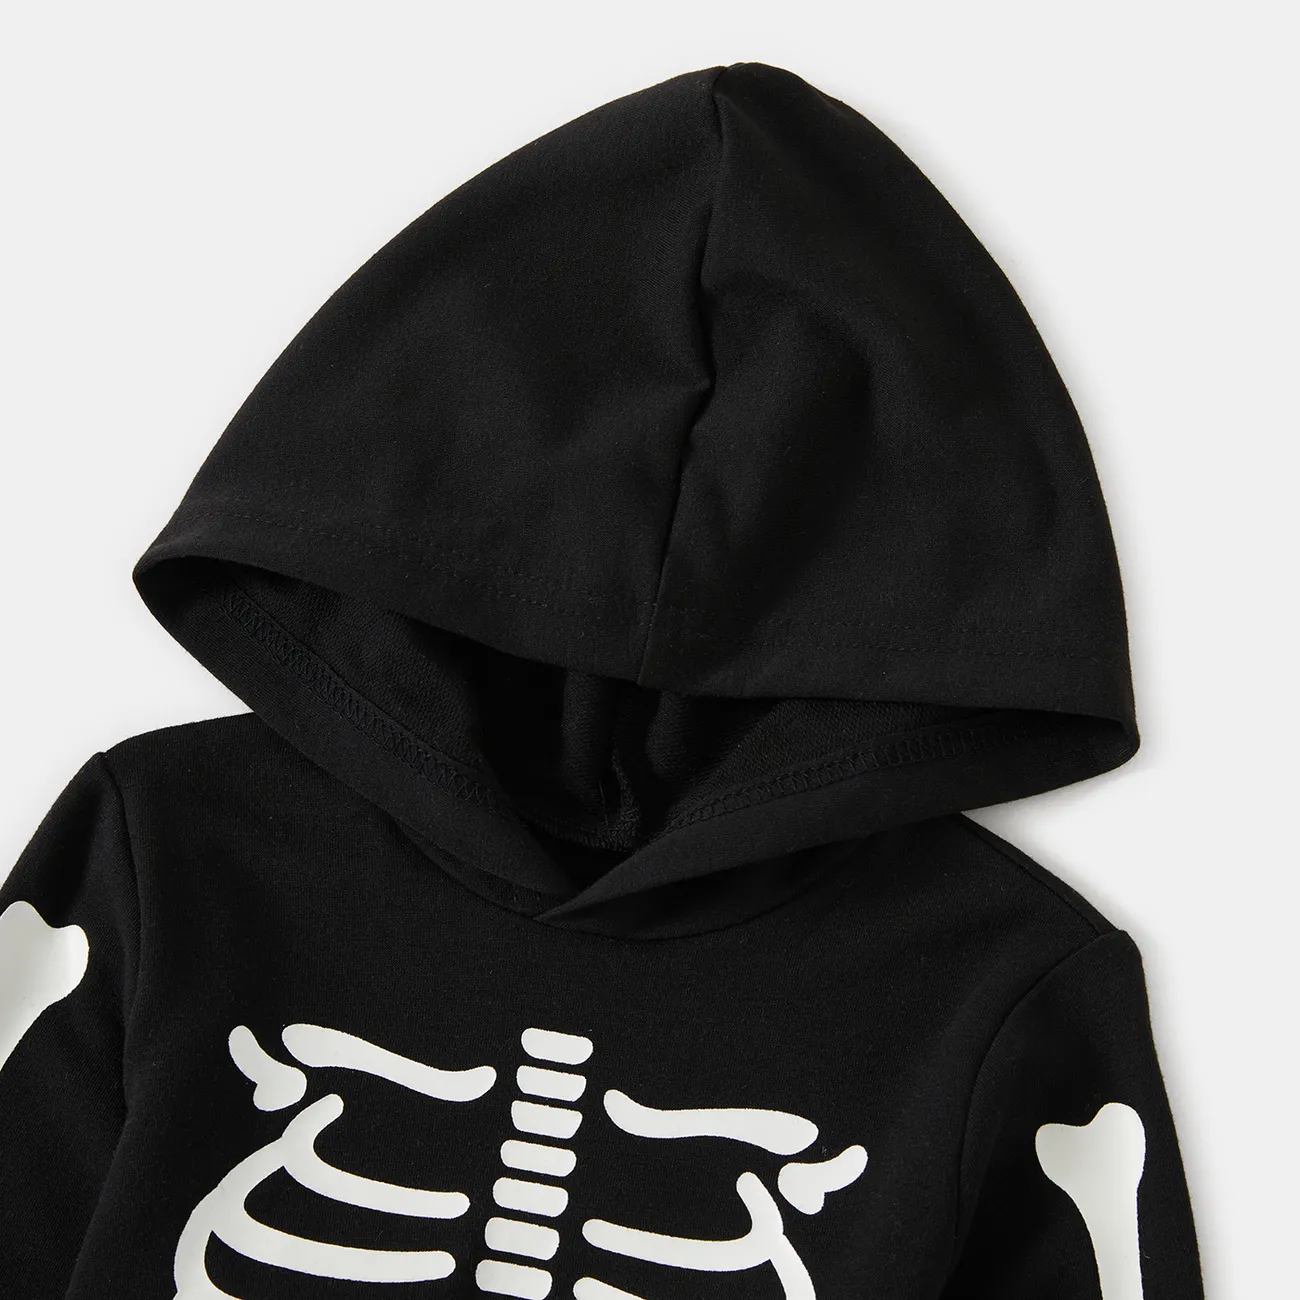 Halloween Glow In The Dark Skeleton Print Black Family Matching Long-sleeve Hoodies Black big image 1